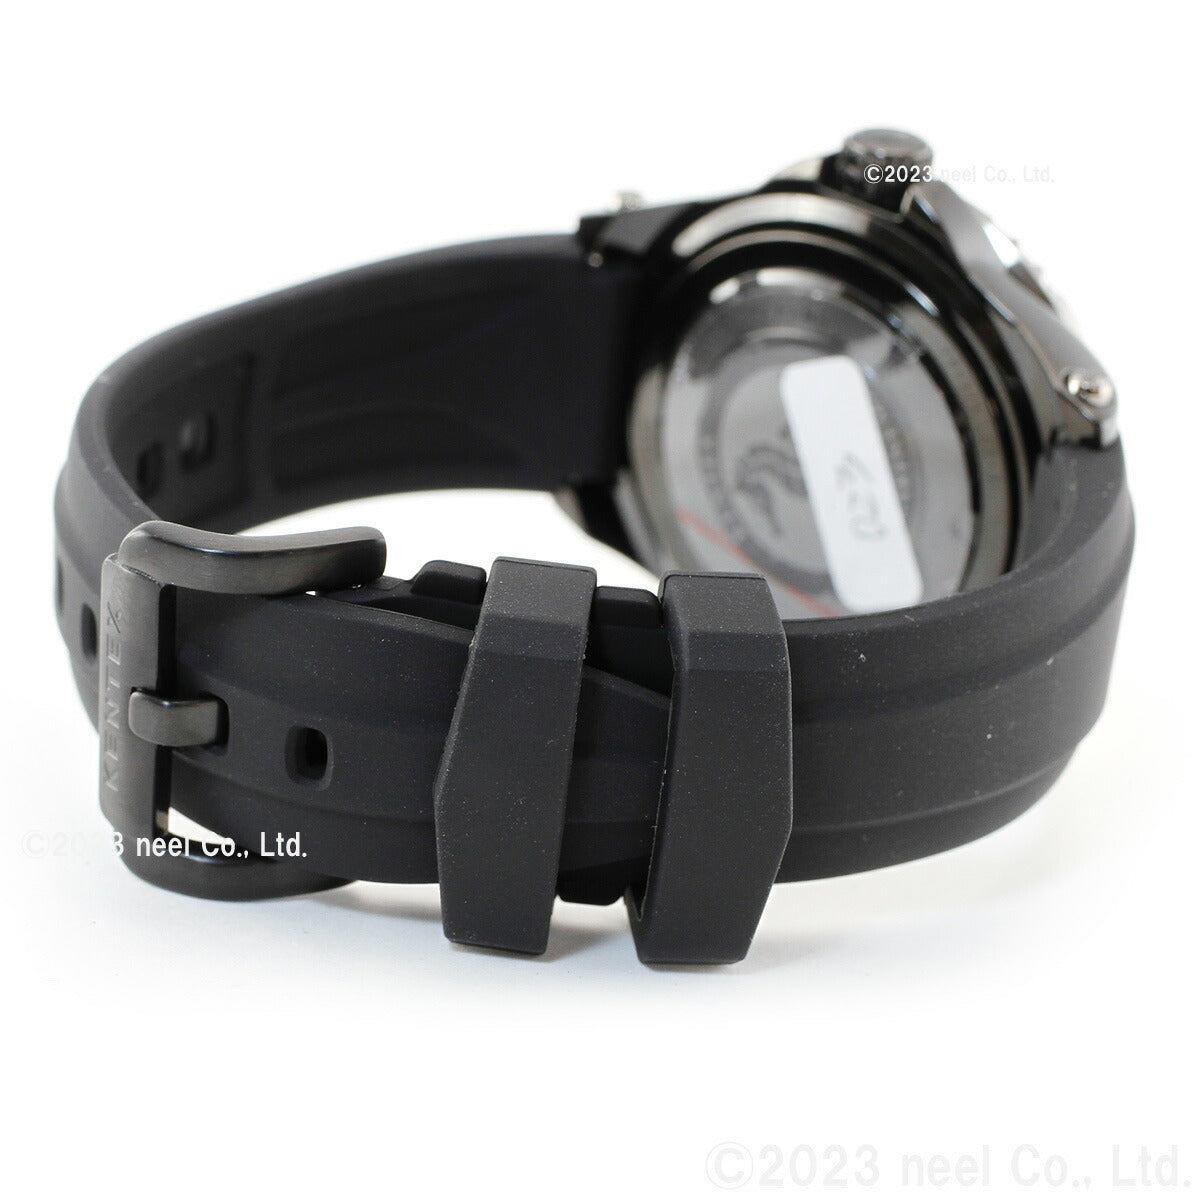 ケンテックス KENTEX 腕時計 時計 メンズ ダイバーズ 自動巻き マリンマン シーホースII 日本製 S706M-23